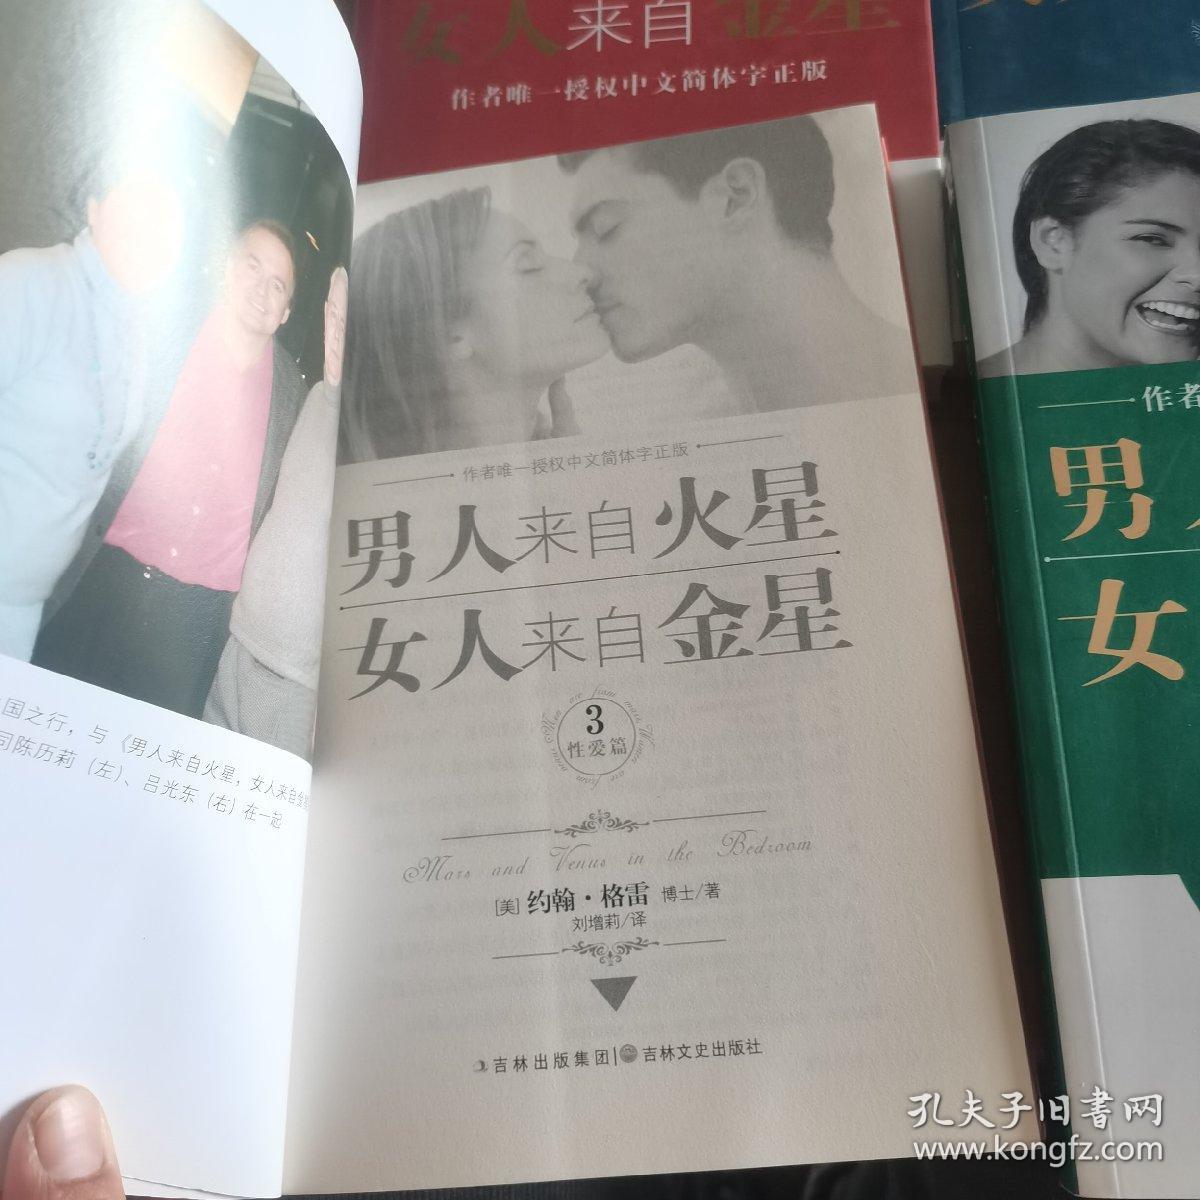 男人来自火星，女人来自金星-作者唯一授权中文简体字正版  恋爱篇  性爱片篇  健康篇（四本合售）